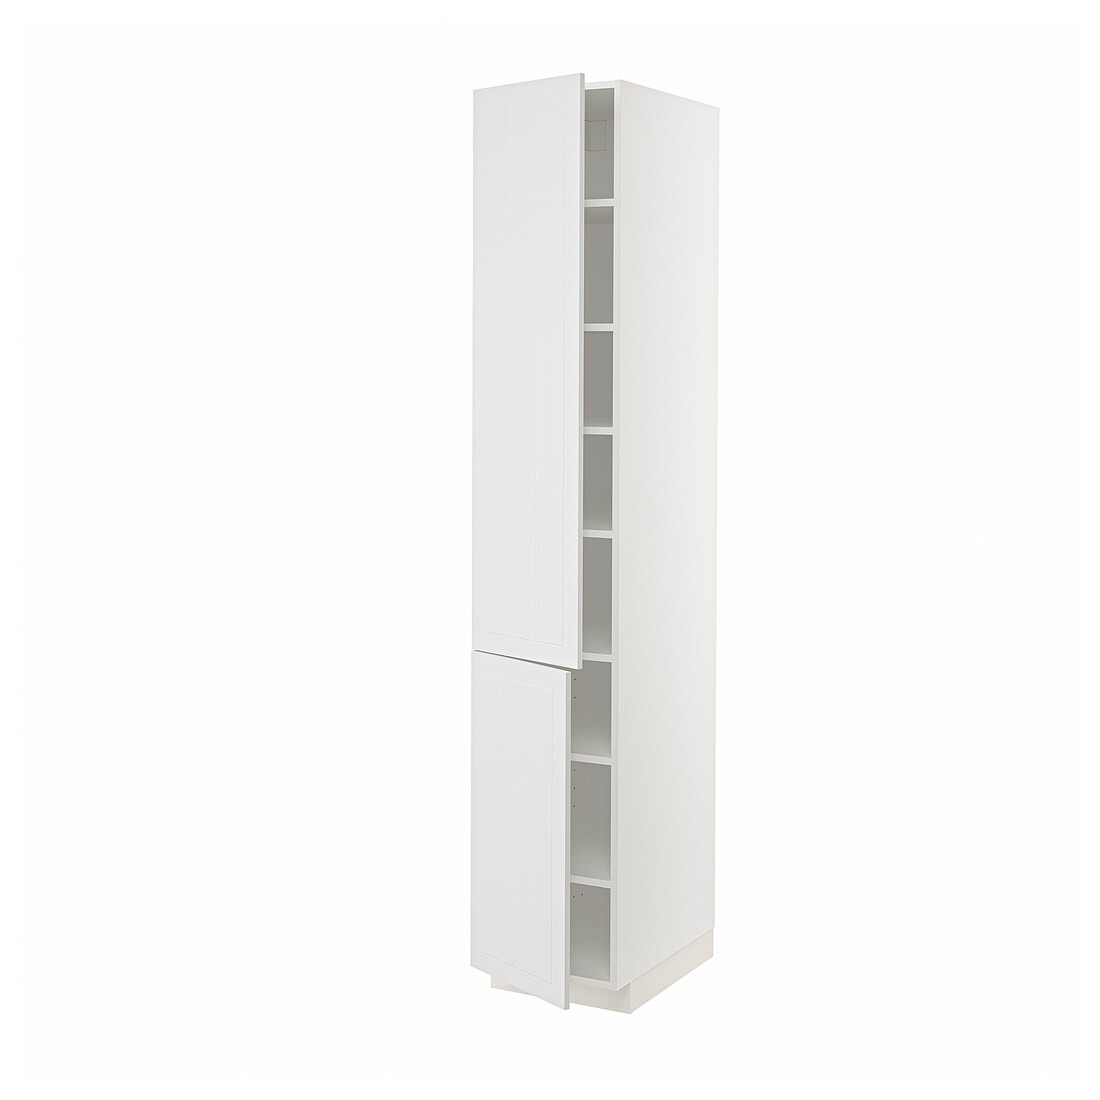 METOD МЕТОД Высокий шкаф с полками / 2 дверцы, белый / Stensund белый, 40x60x220 см